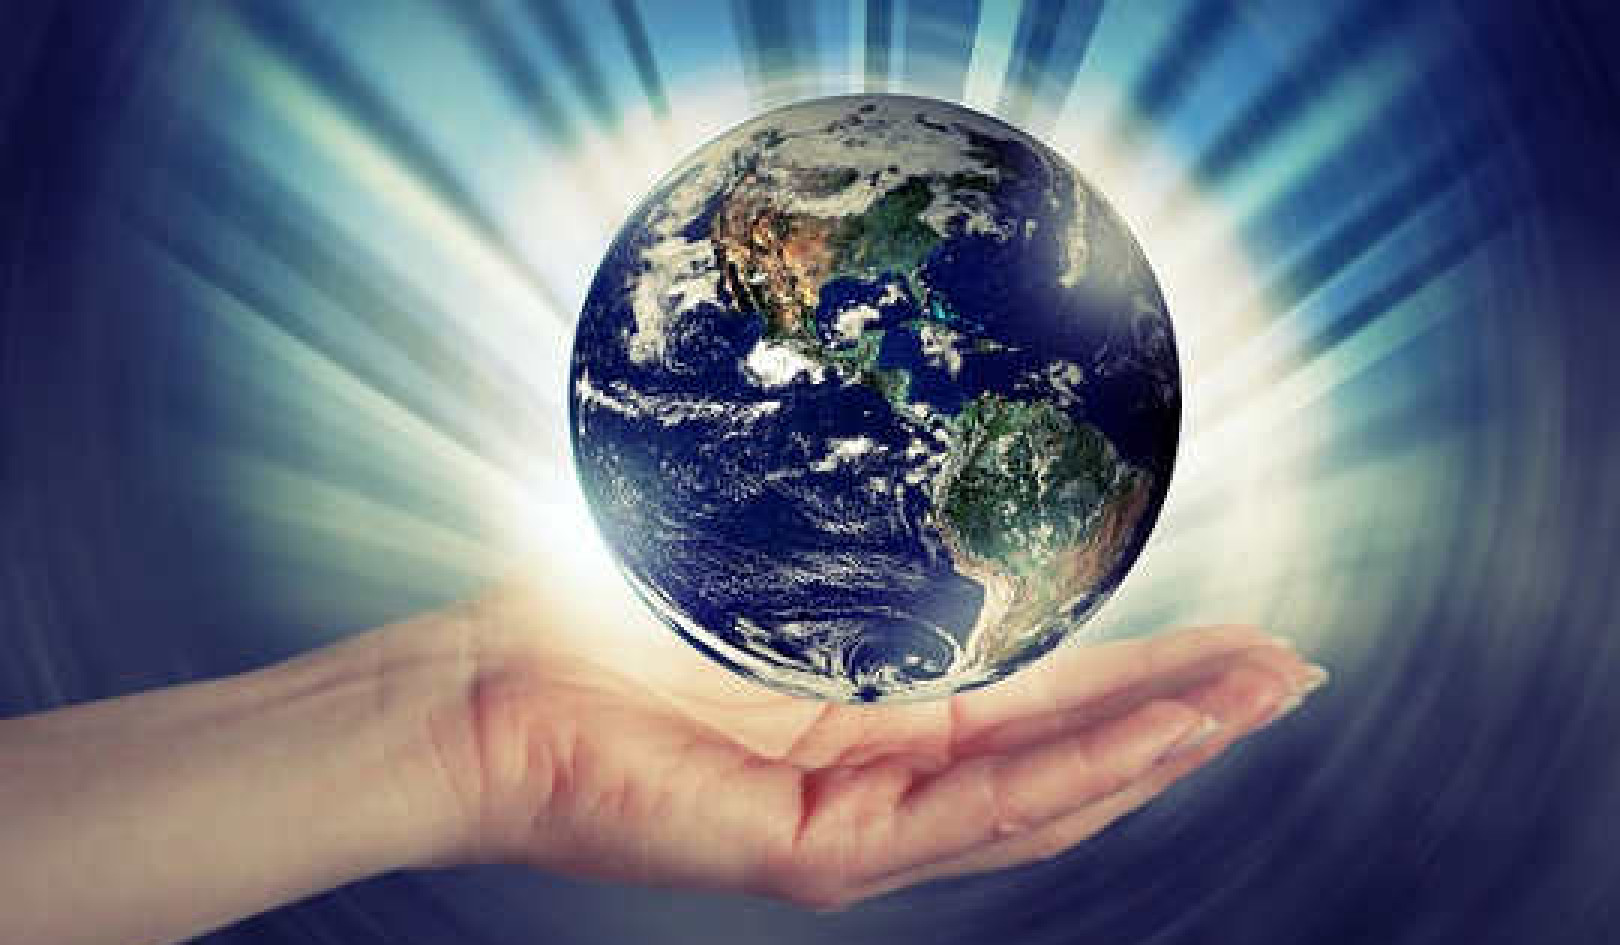 การรักษาโลก: เหนือกว่าวิทยาศาสตร์ ศาสนา และวัตถุนิยม